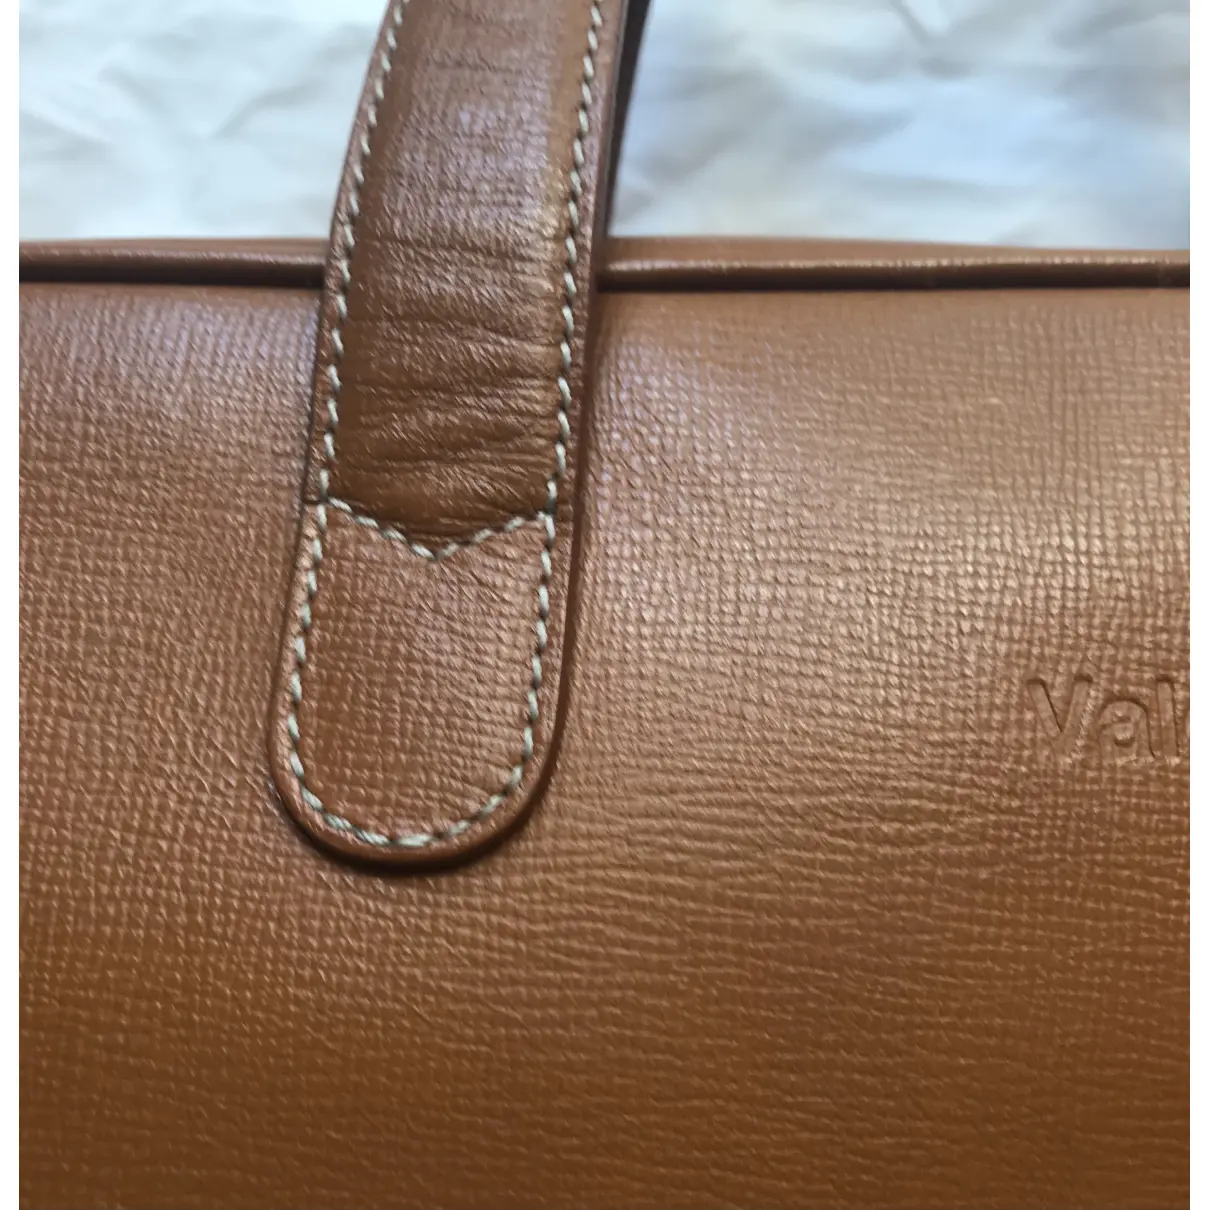 Leather handbag Valextra - Vintage